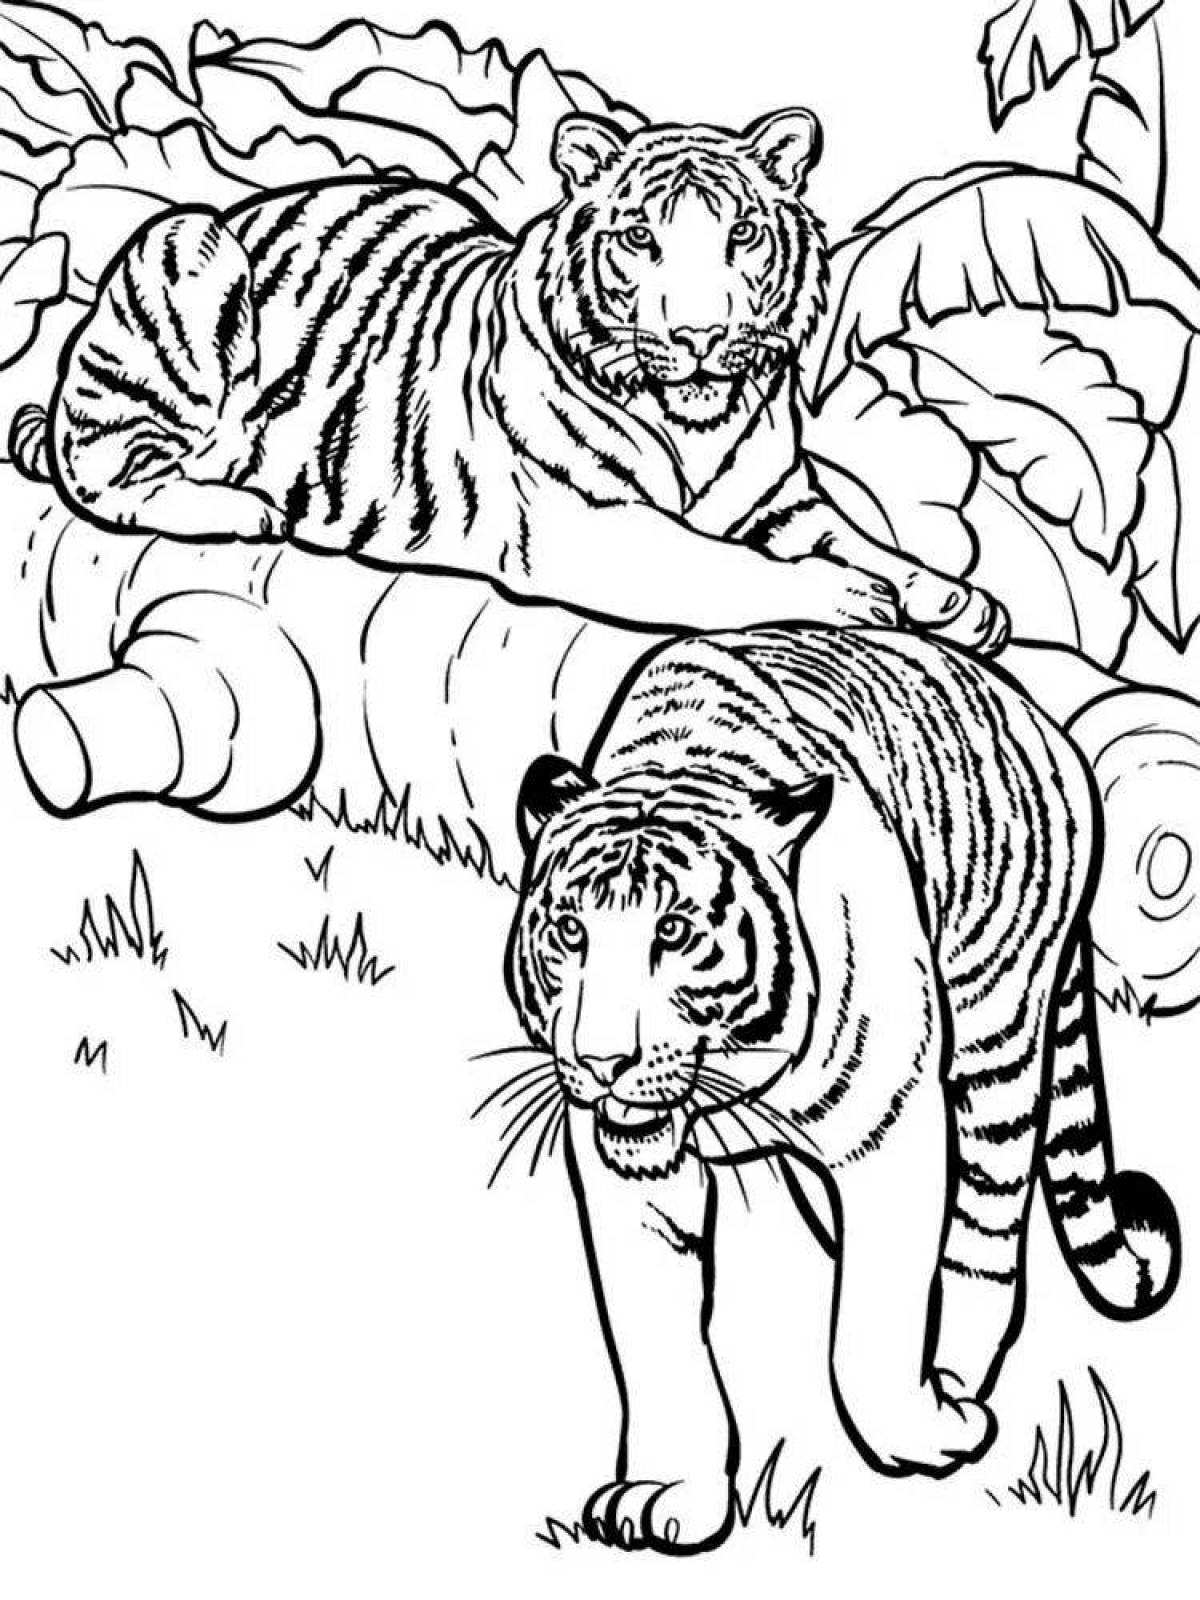 Tiger drawing #6